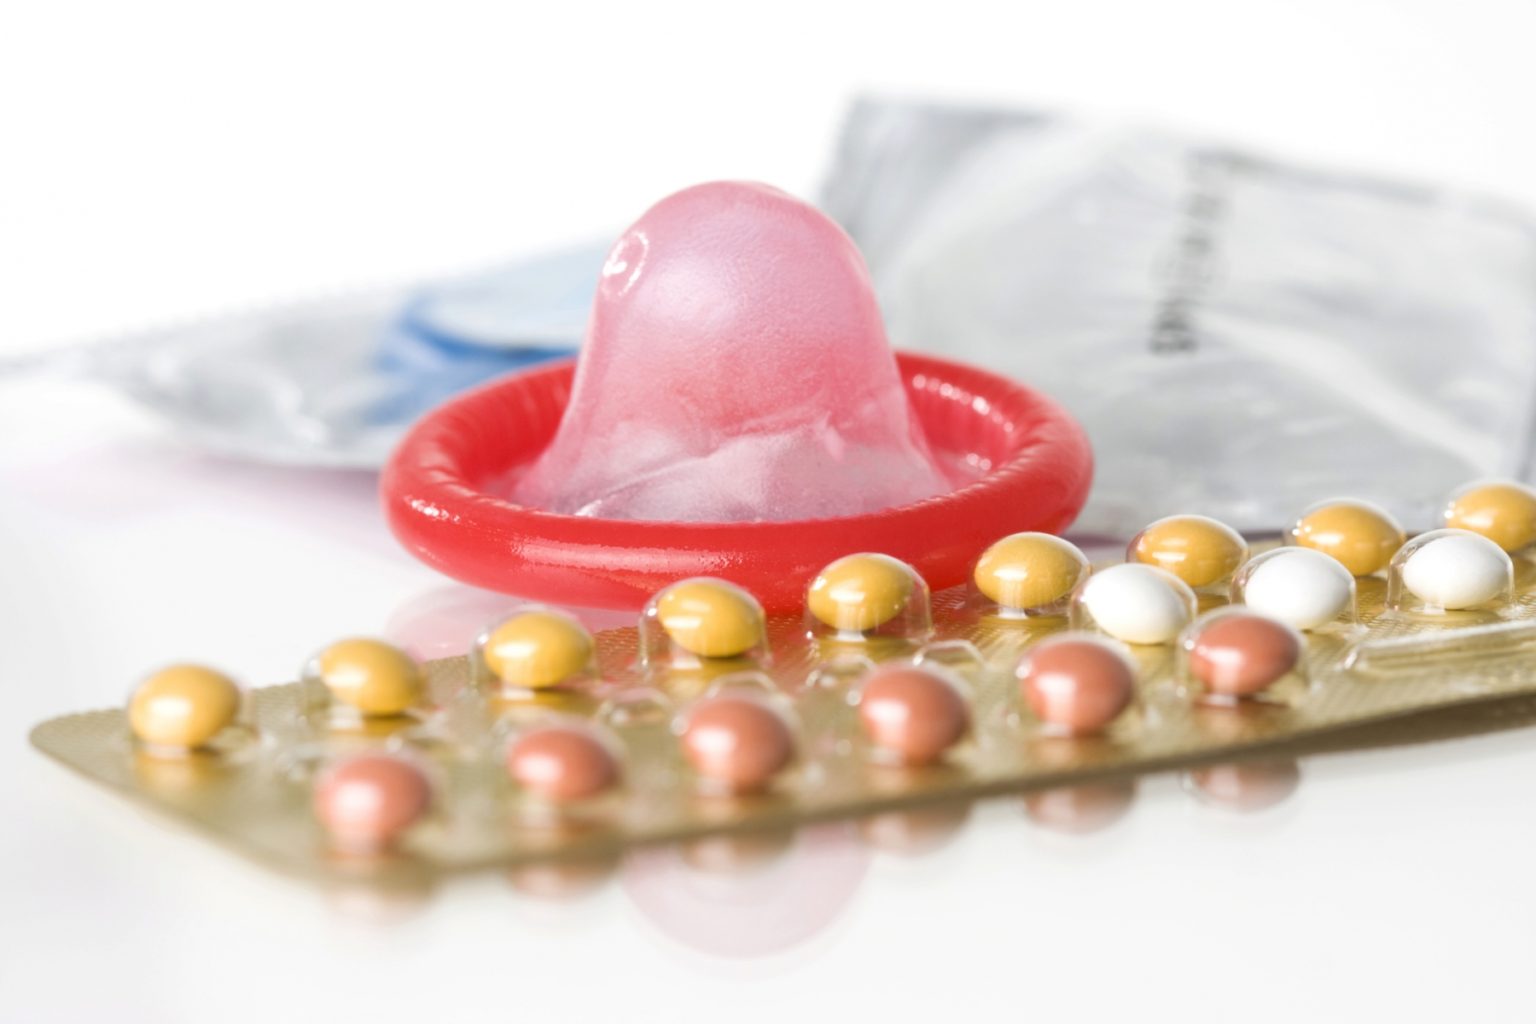 cuál es el uso correcto de los metodos anticonceptivos